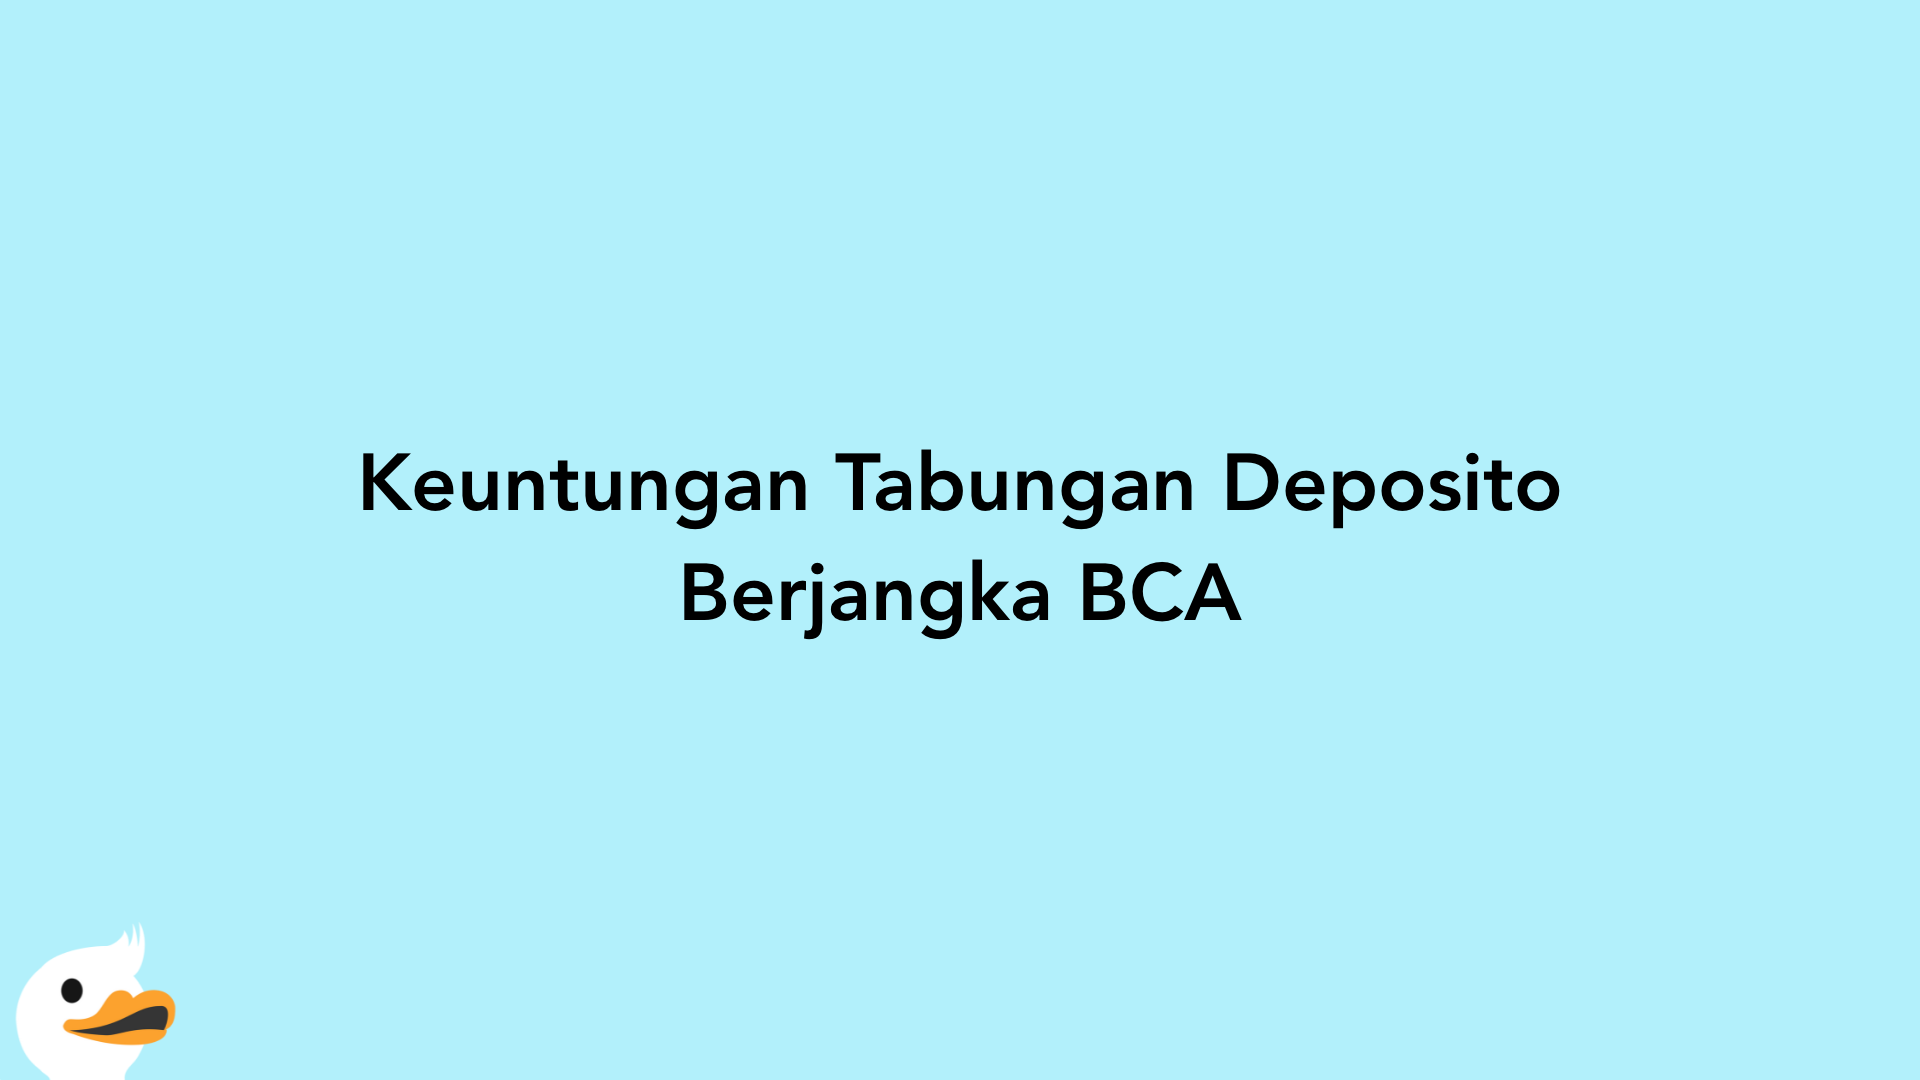 Keuntungan Tabungan Deposito Berjangka BCA